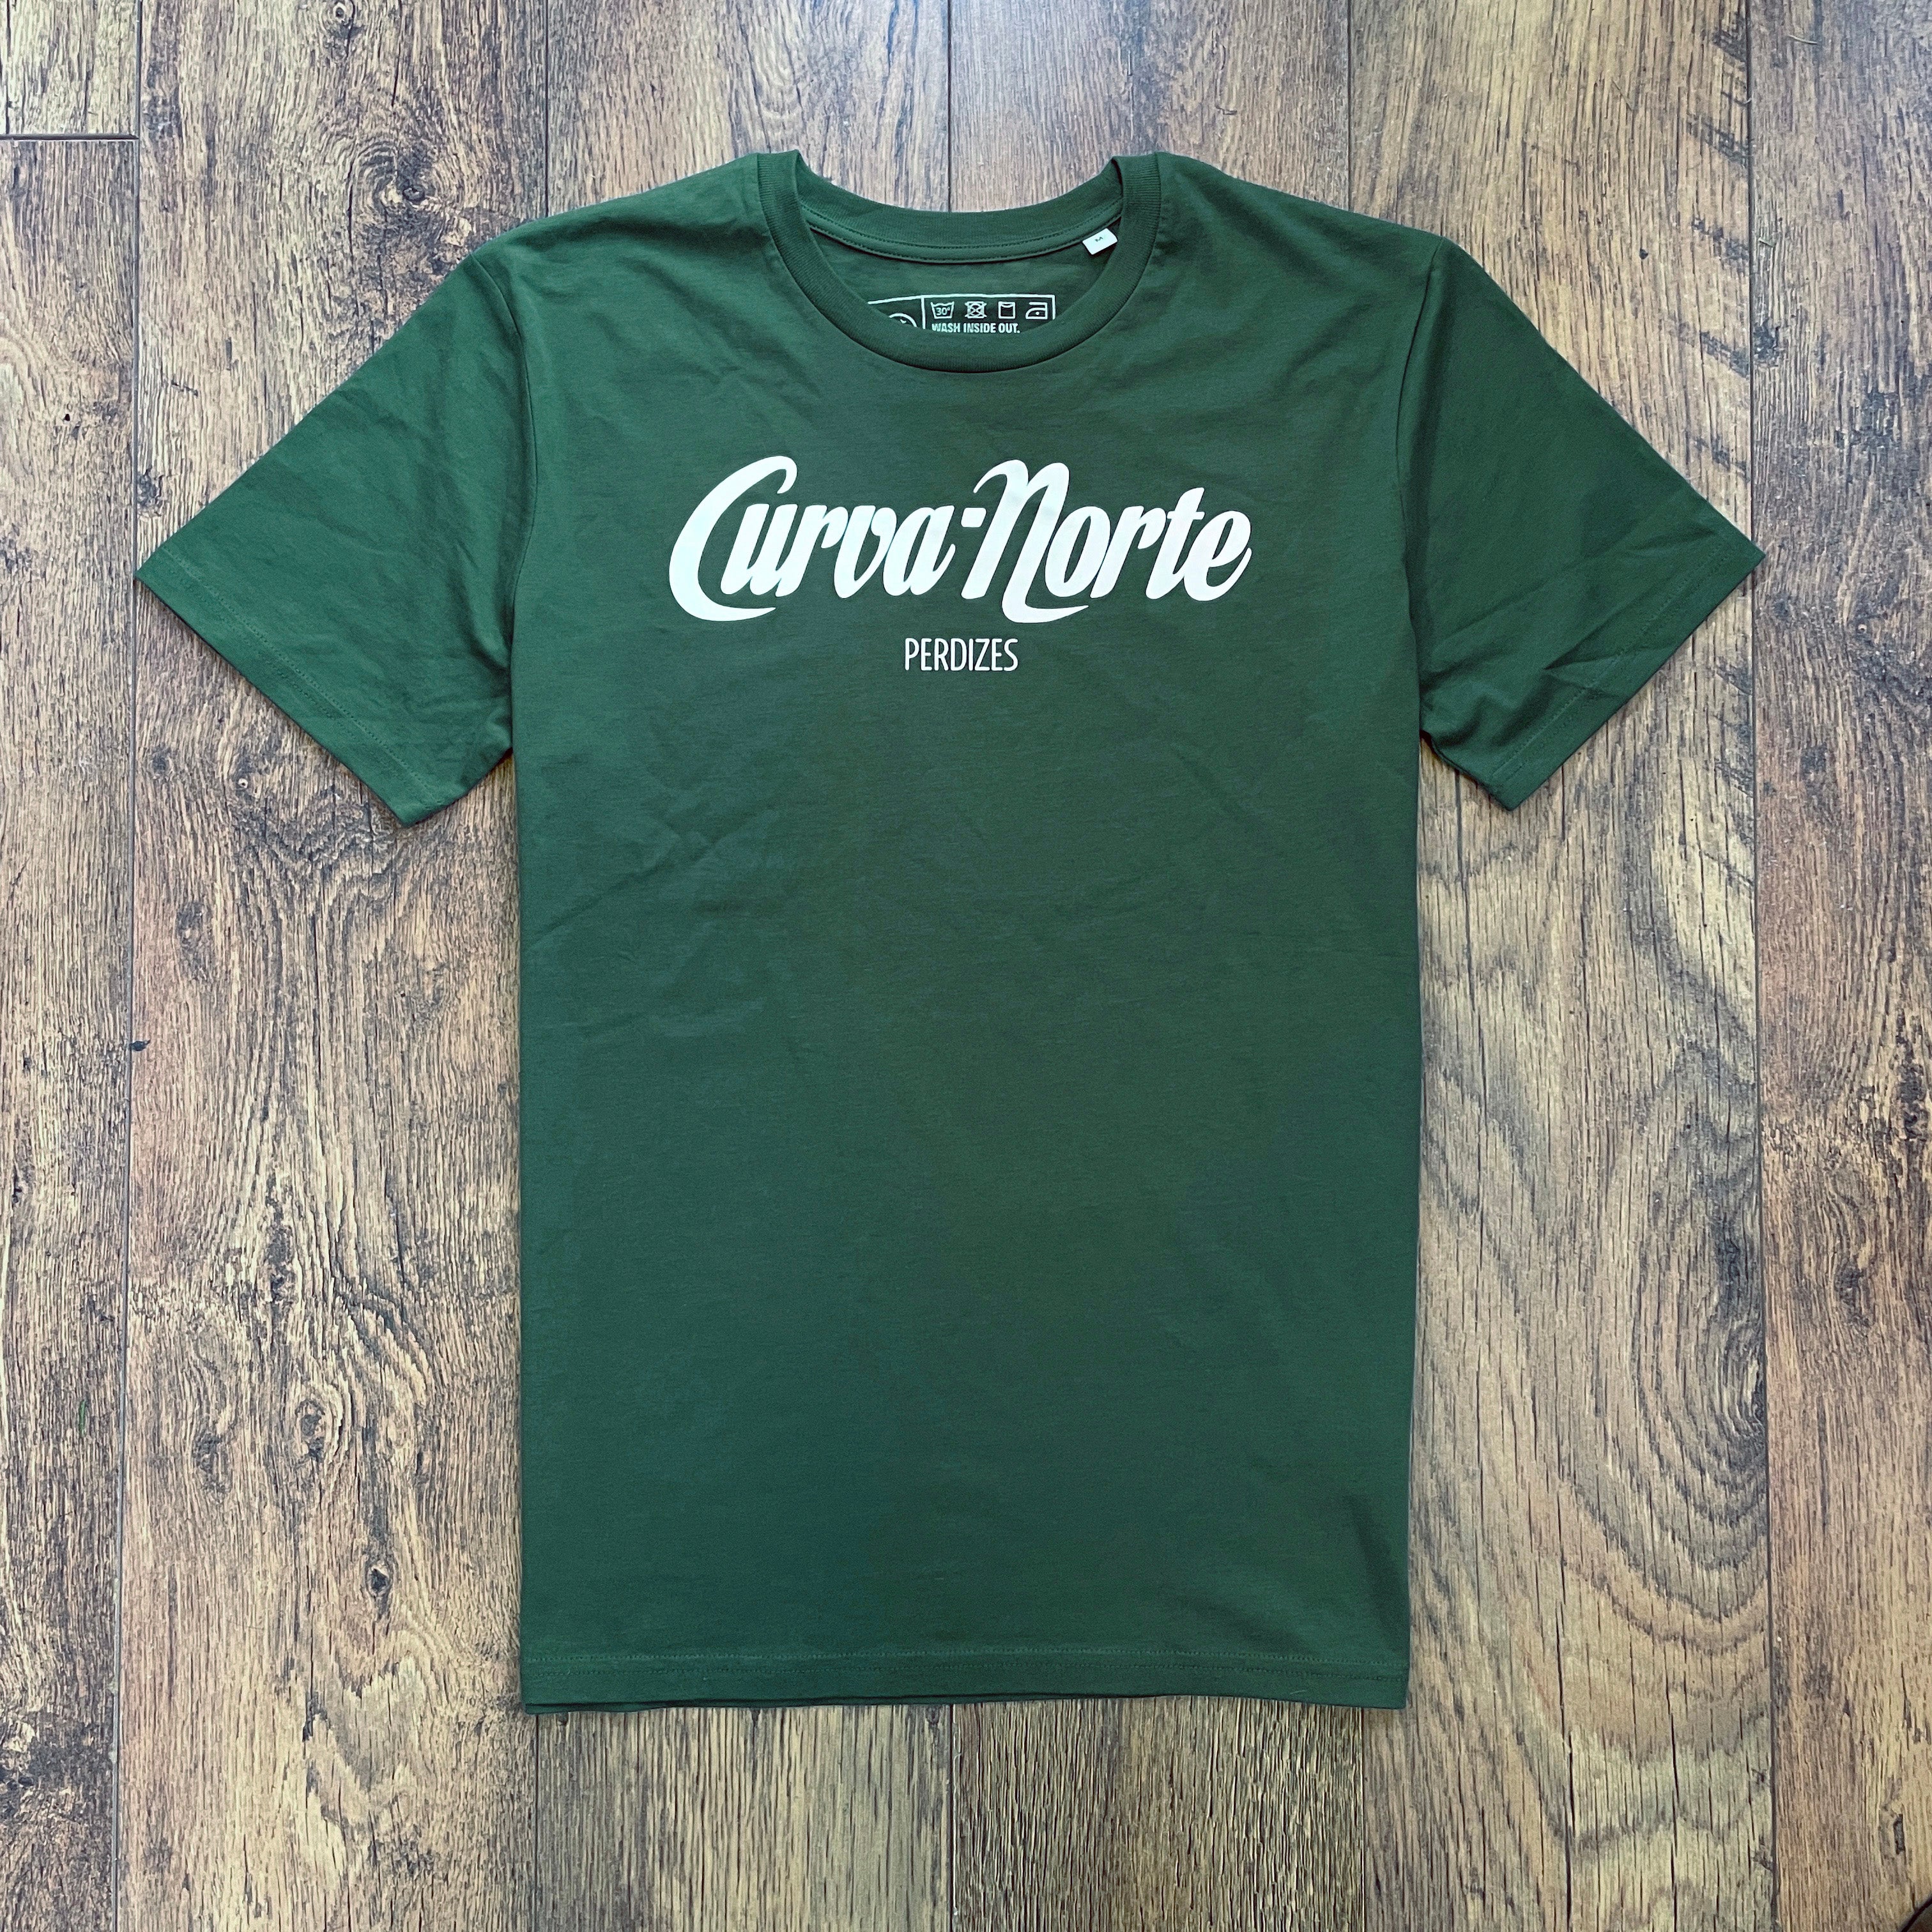 Curva Norte Perdizes T-shirt